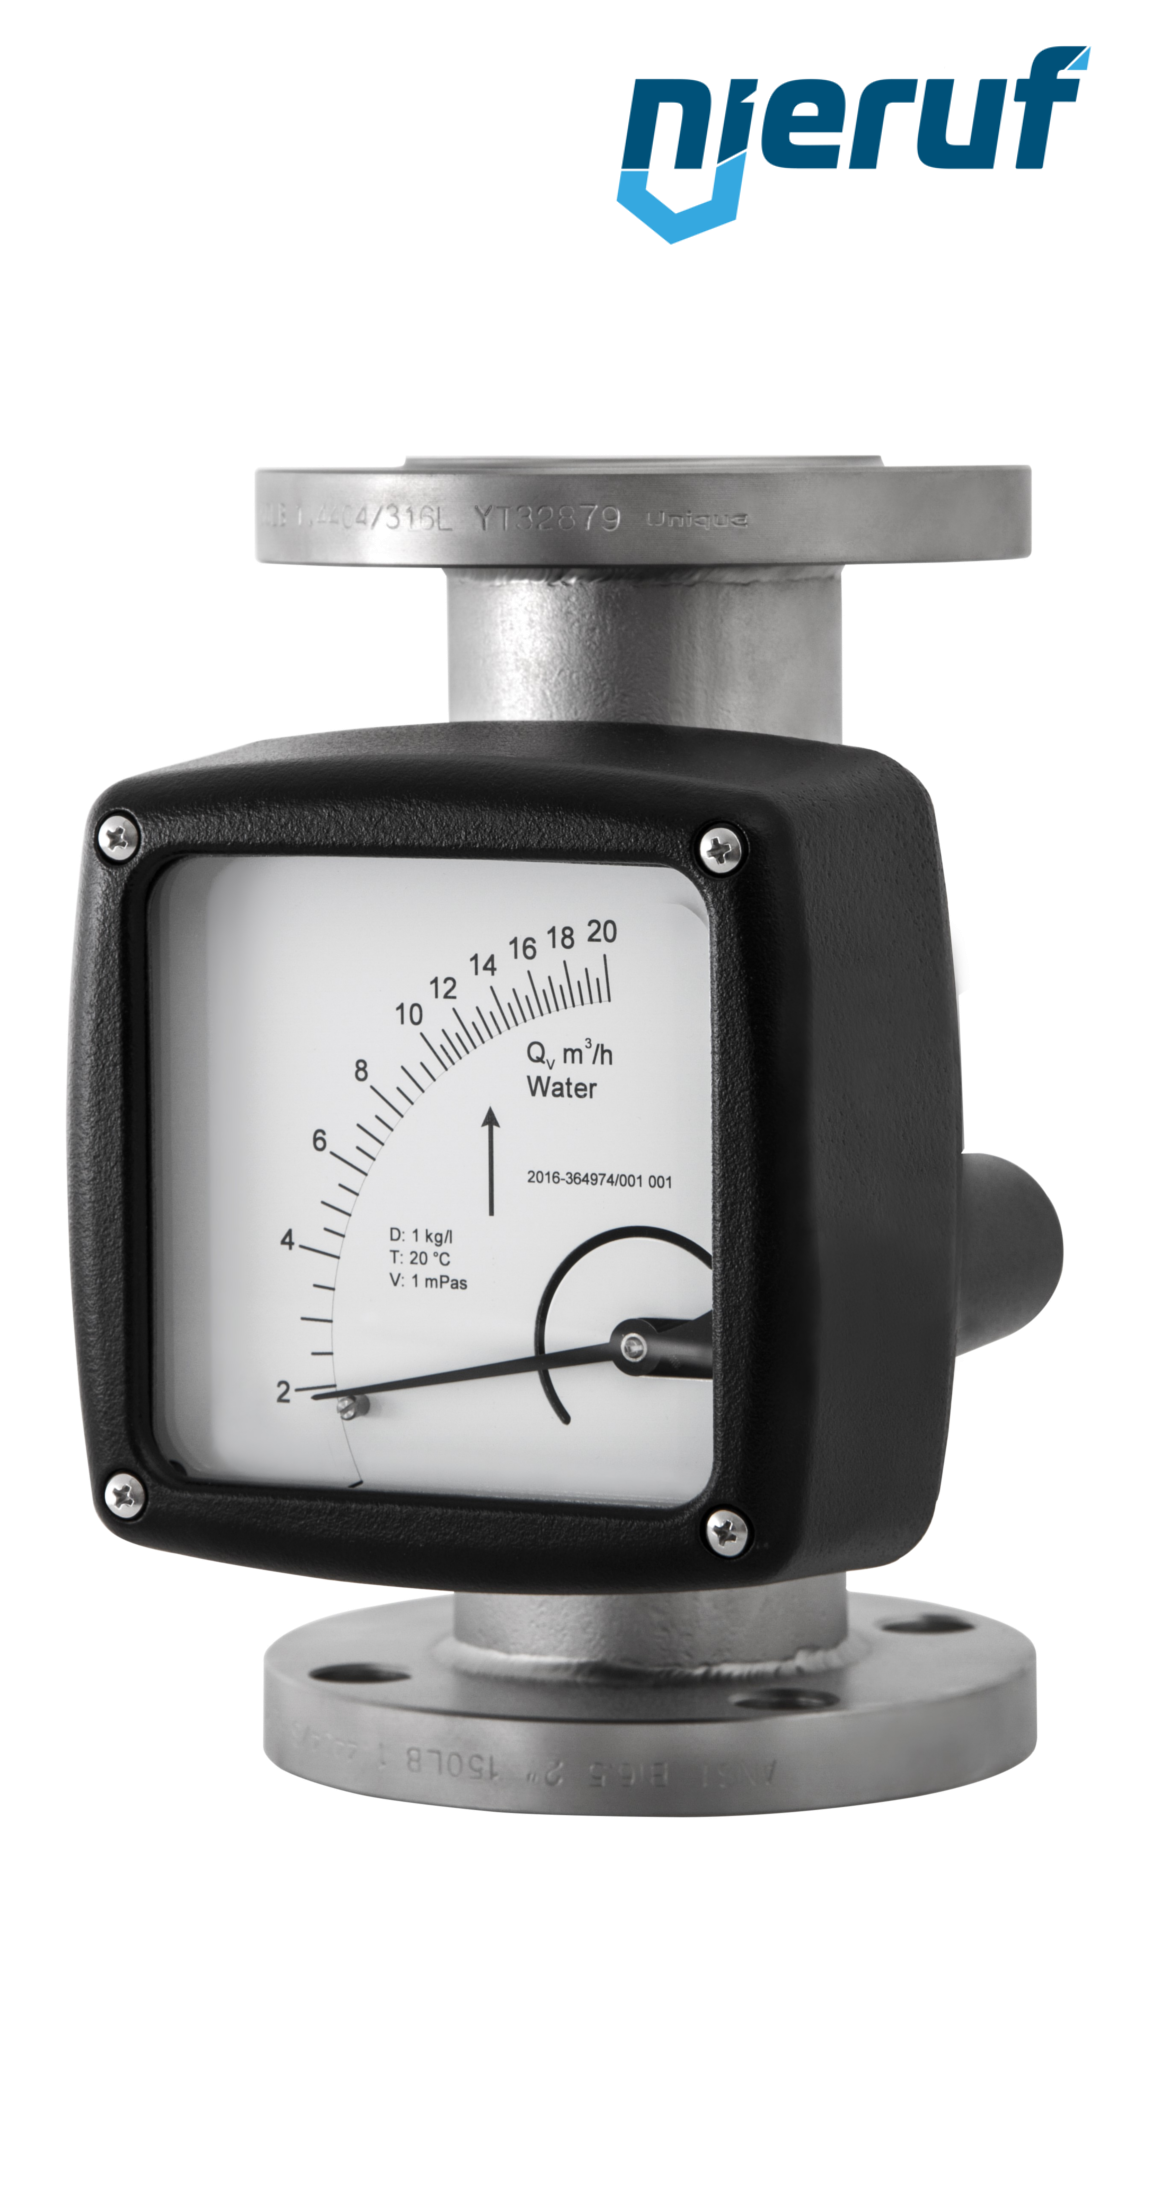 misuratore di flusso / rotametro completamente in metallo DN125-attacco 170,0 - 1700,0 m3/h tubo DN100 aria